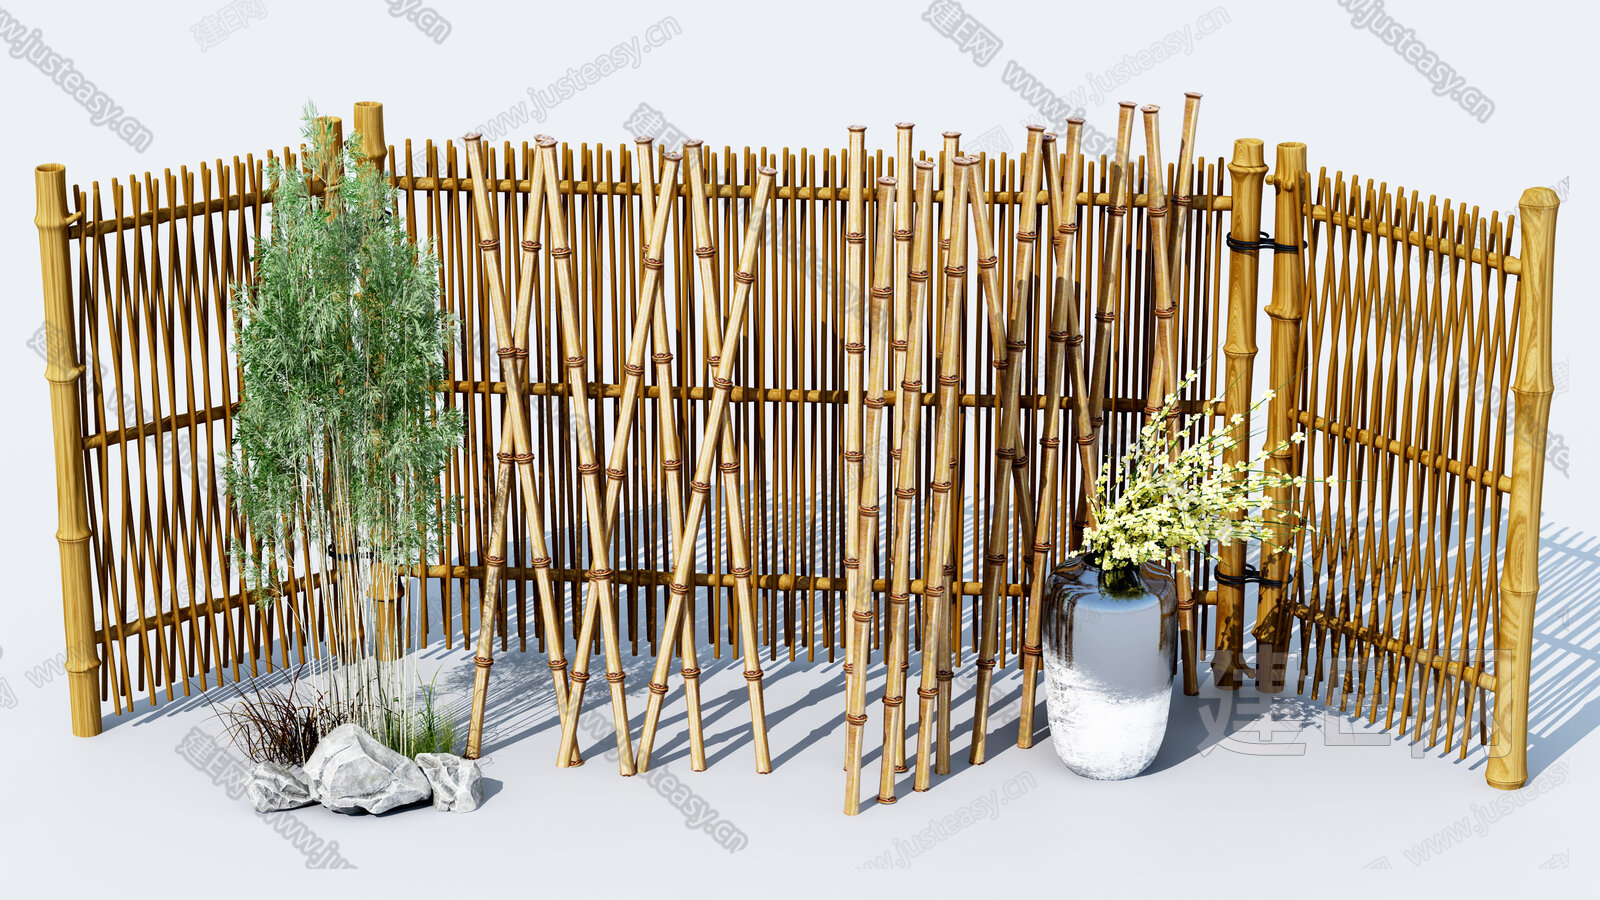 厂家直销花园竹篱笆围栏白竹网格篱笆竹爬藤网竹园林护栏小区围栏-阿里巴巴